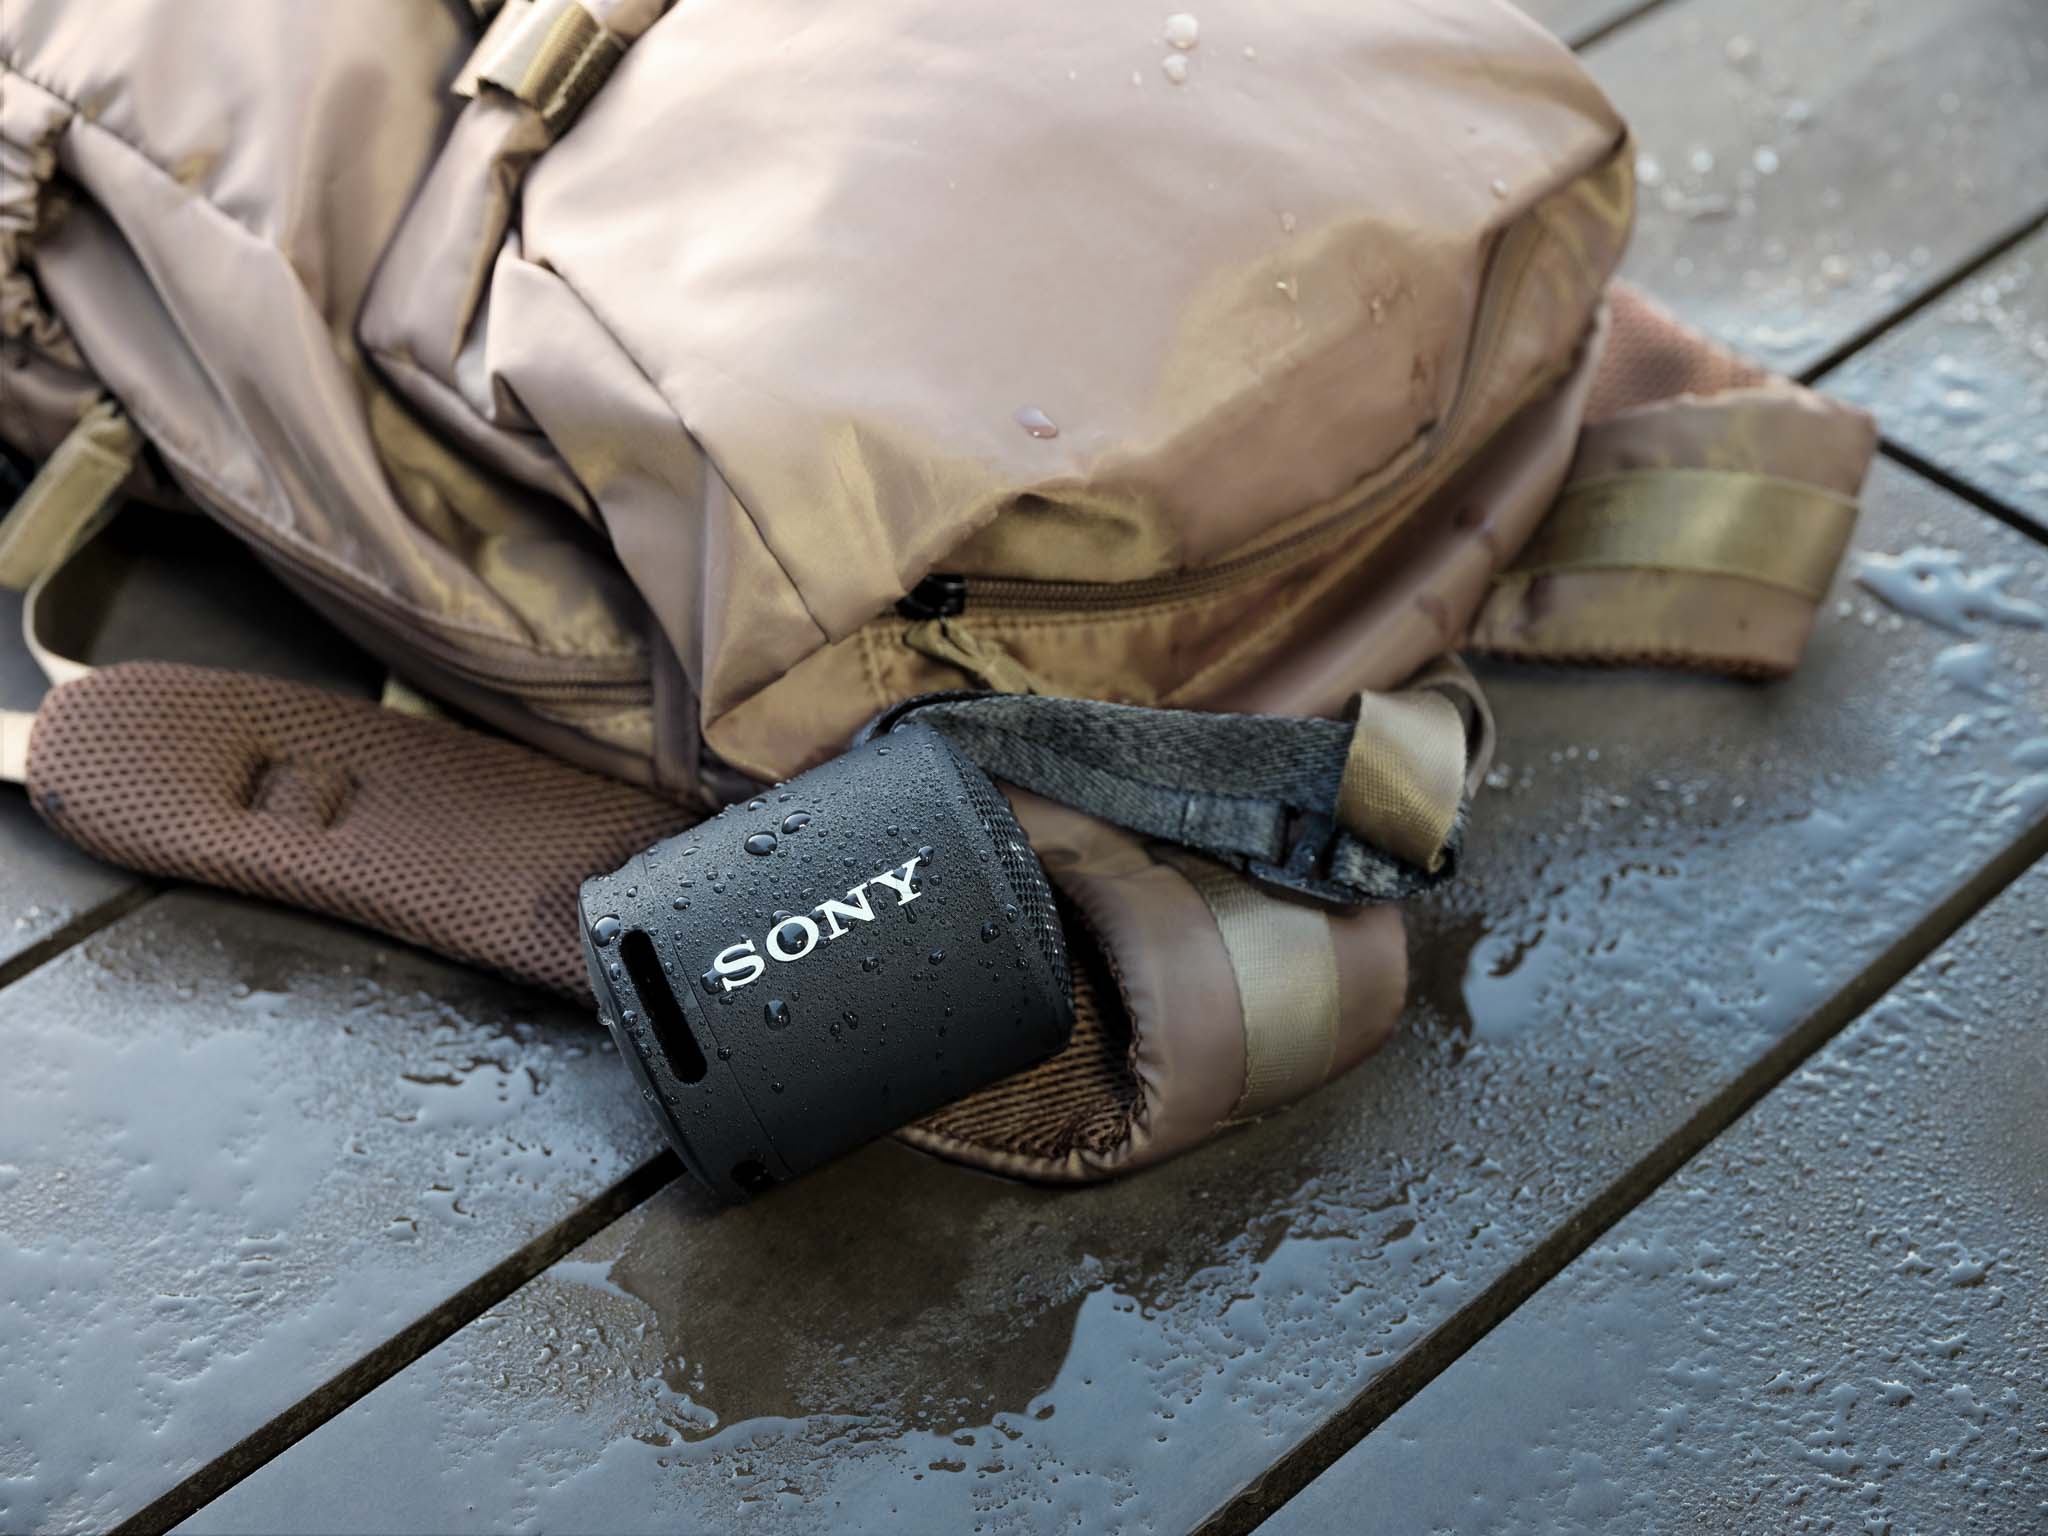 Sony ra mắt SRS-XB13 thế hệ mới – Loa không dây di động nhỏ gọn với âm thanh EXTRA BASS mạnh mẽ